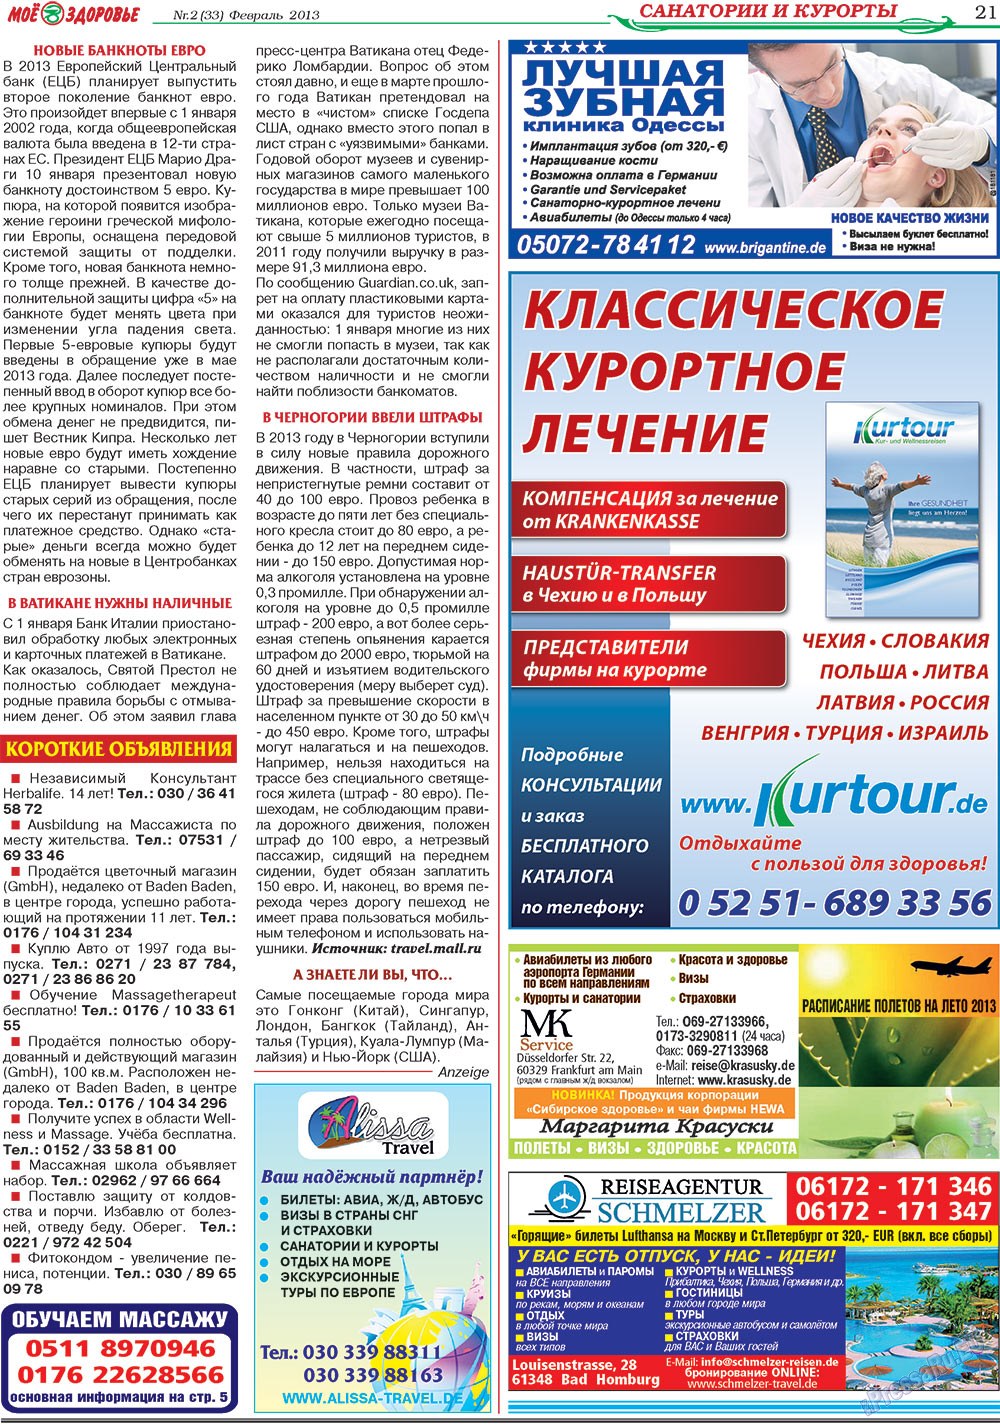 Кругозор (газета). 2013 год, номер 2, стр. 21